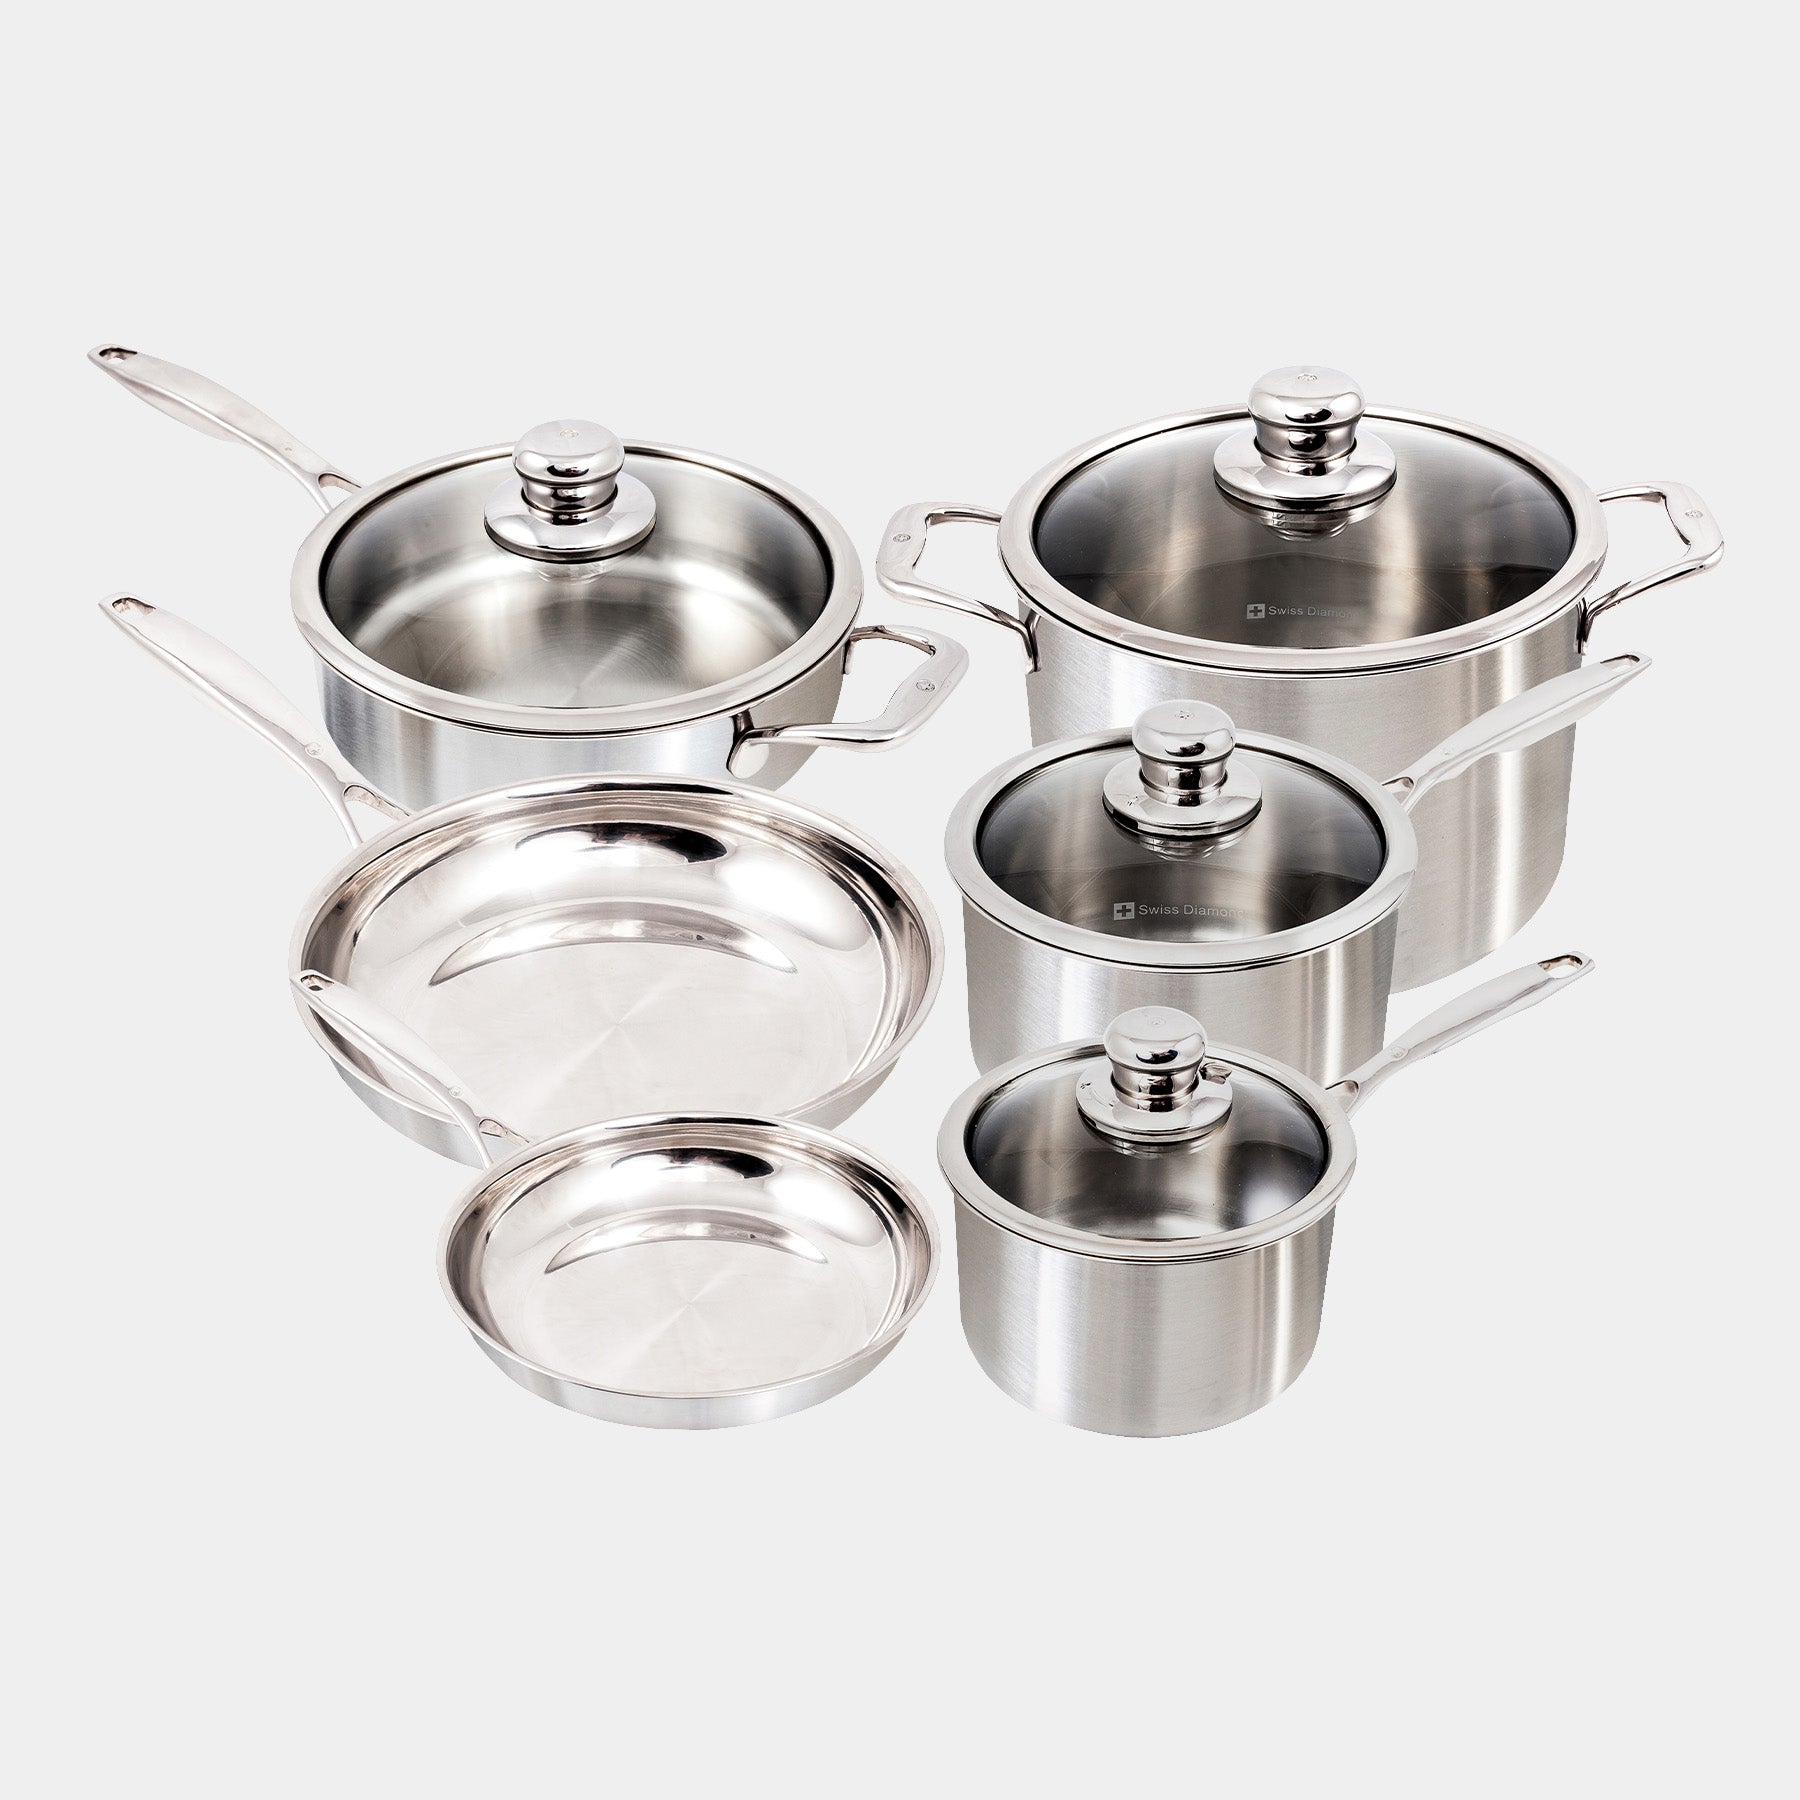 Premium Clad 10-Piece Stainless Steel Set. Includes Includes: Fry Pans, Saucepans, Saute Pan, Stock Pot